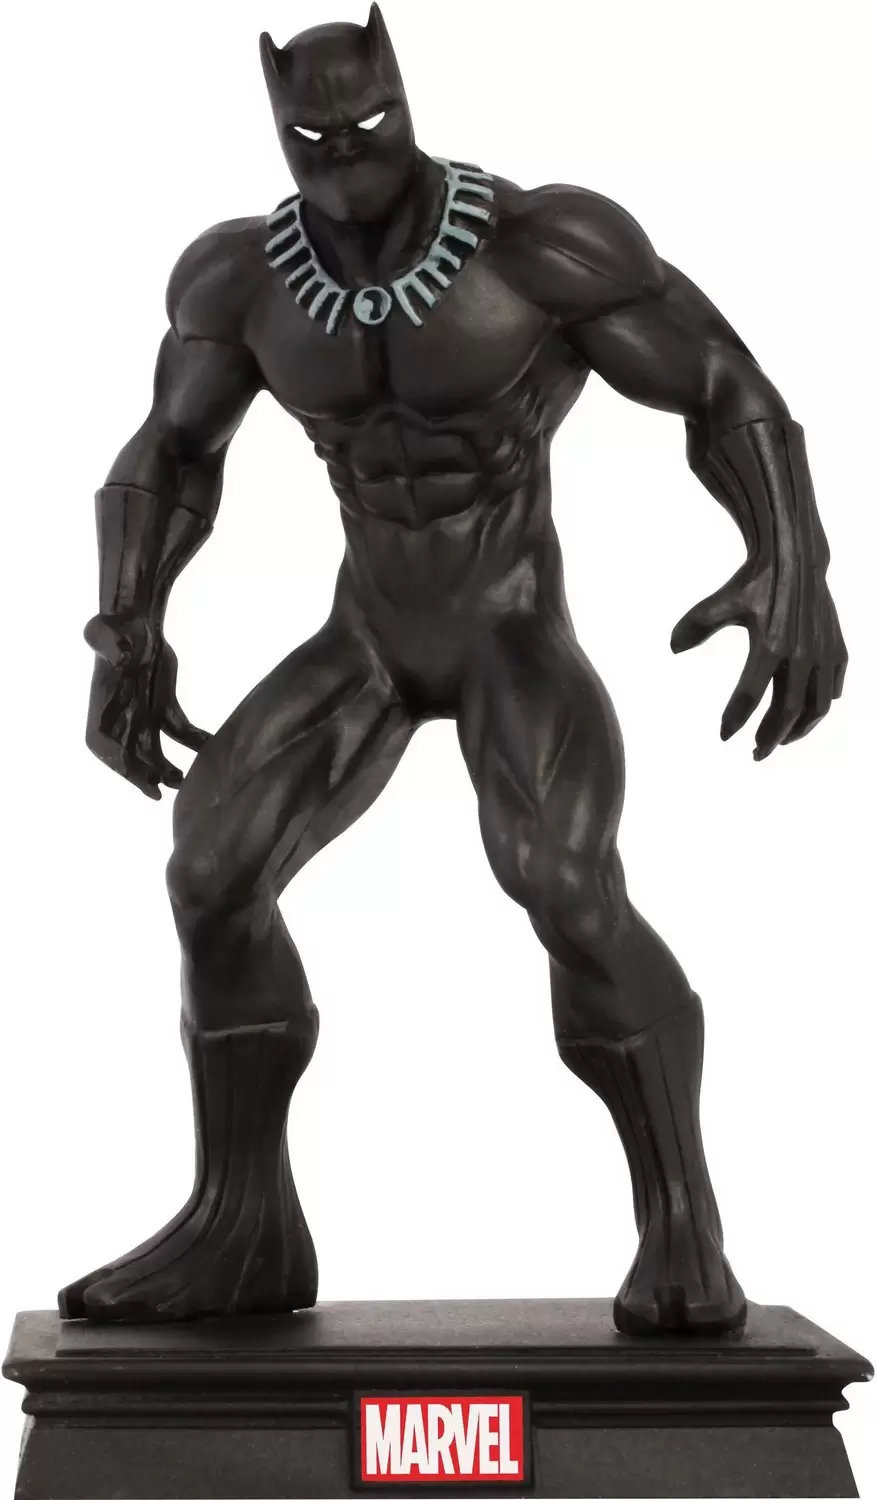 Marvel La Collection des Super-Héros - Black Panther